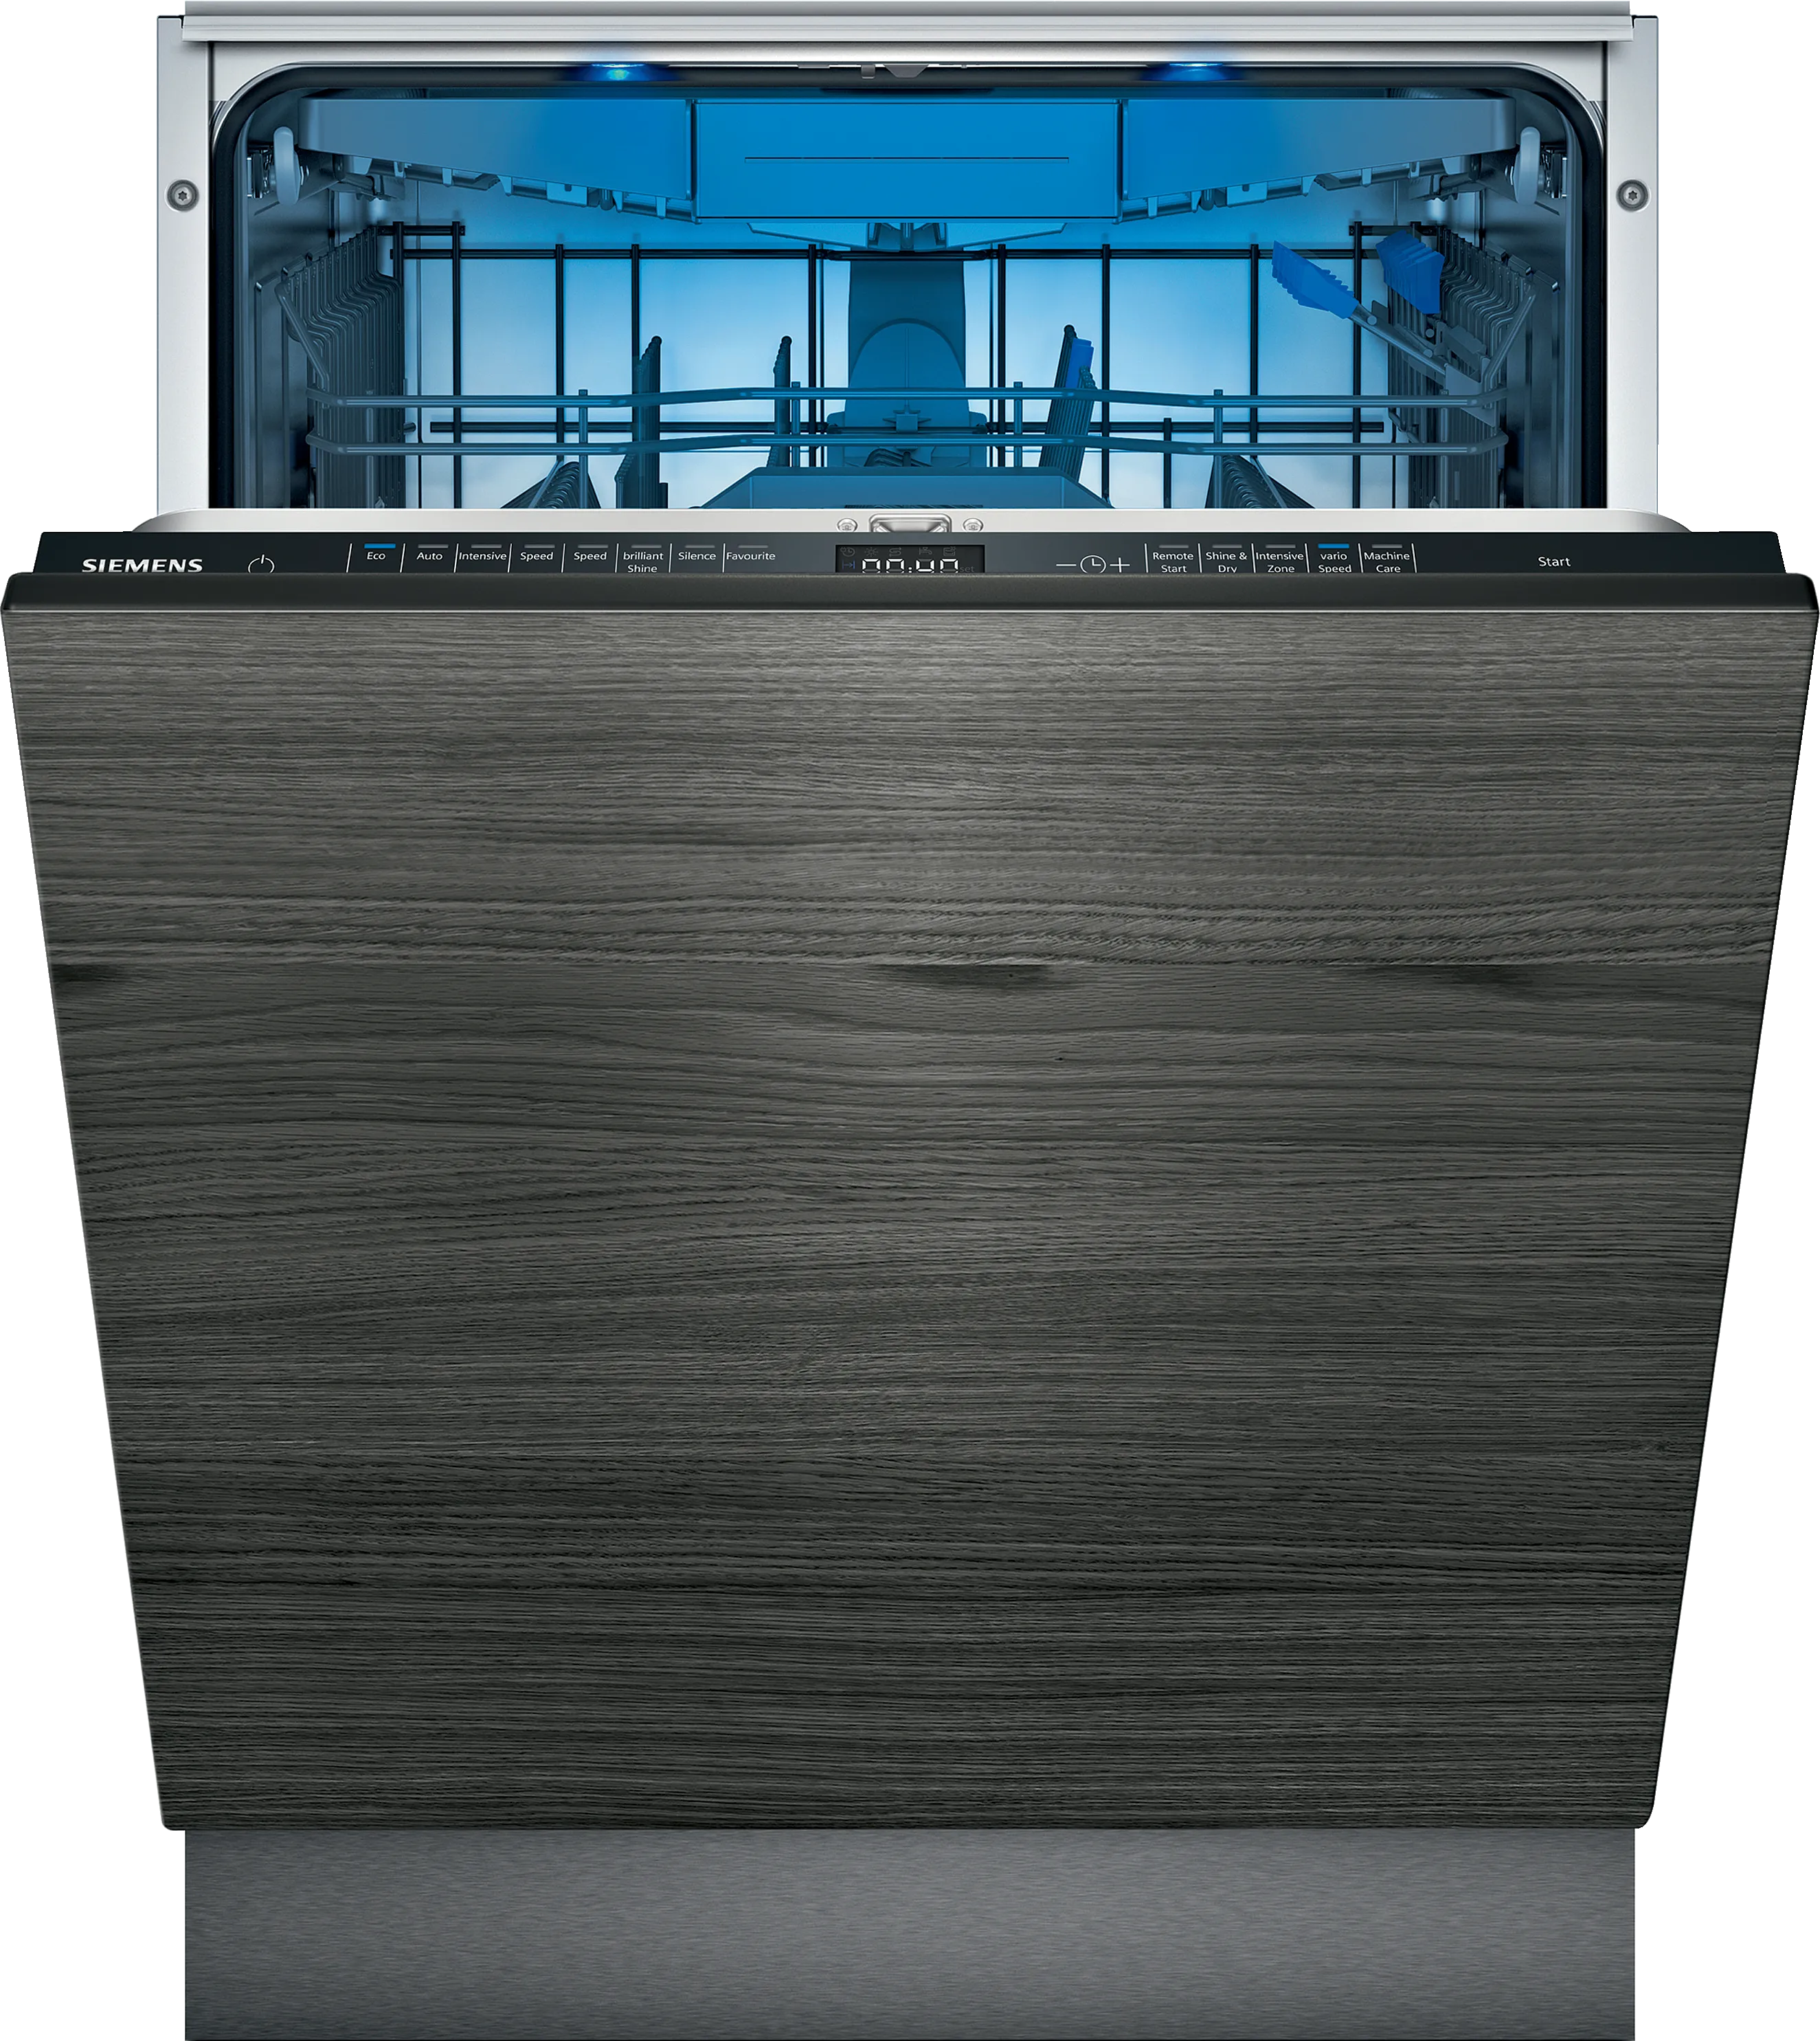 IQ500 fully-integrated dishwasher 60 cm varioHinge 